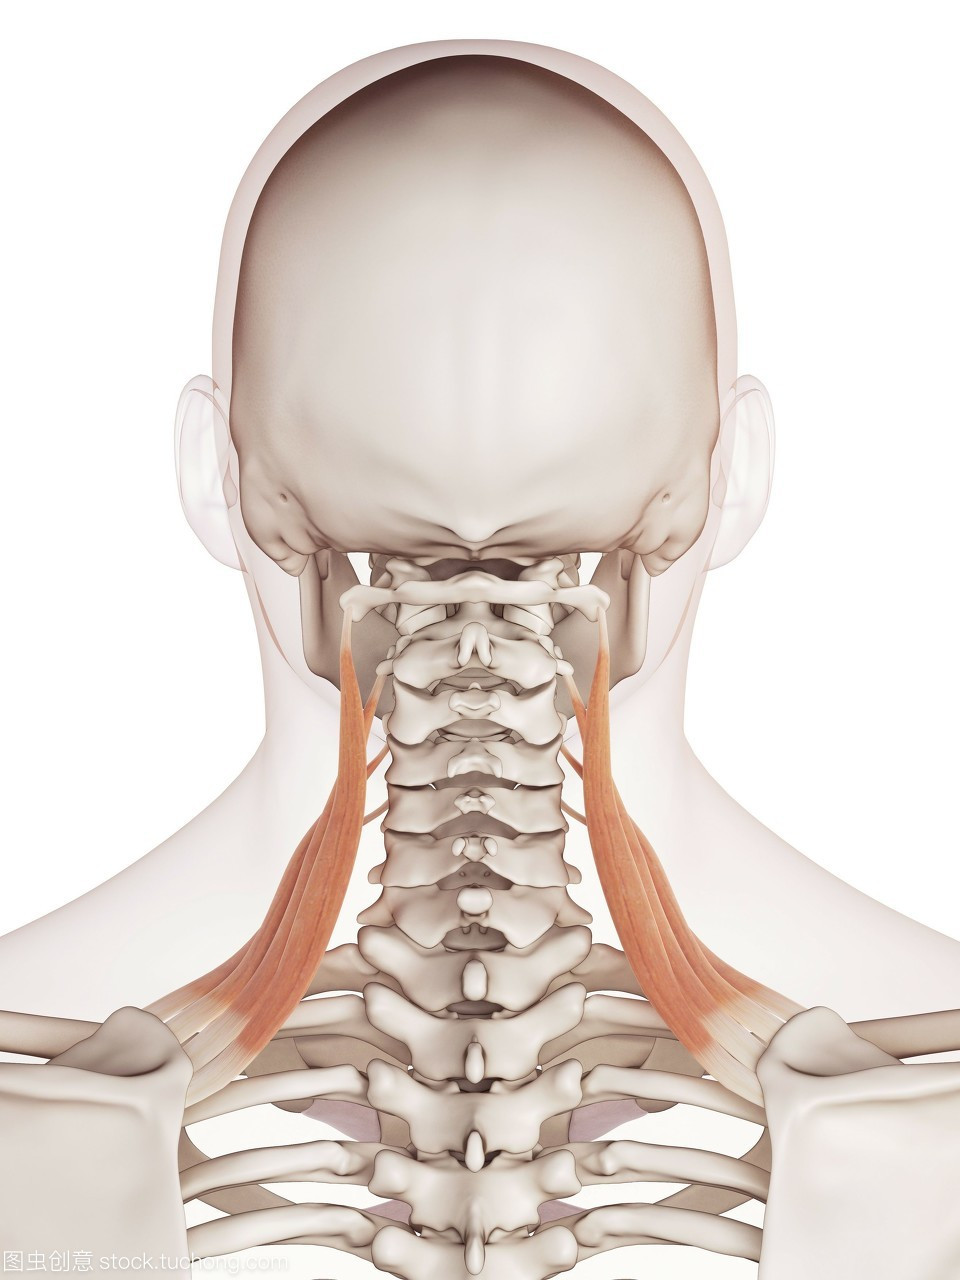 颈椎1~7节位置图图片